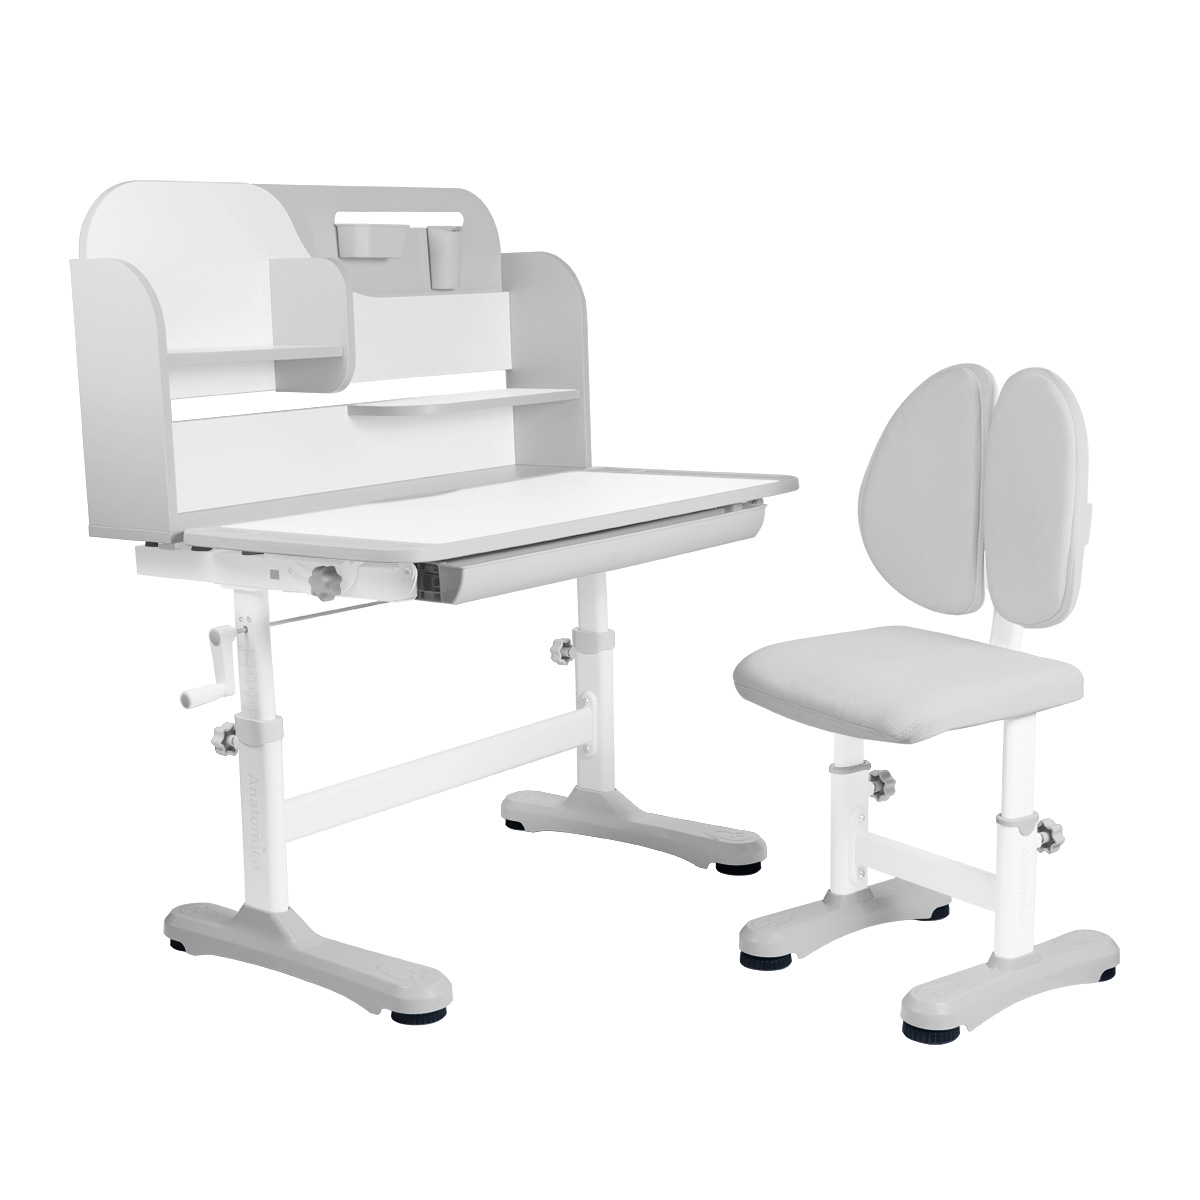 Комплект Anatomica Amadeo парта, стул, надстройка, выдвижной ящик, серый anatomica комплект amadeo парта стул надстройка выдвижной ящик